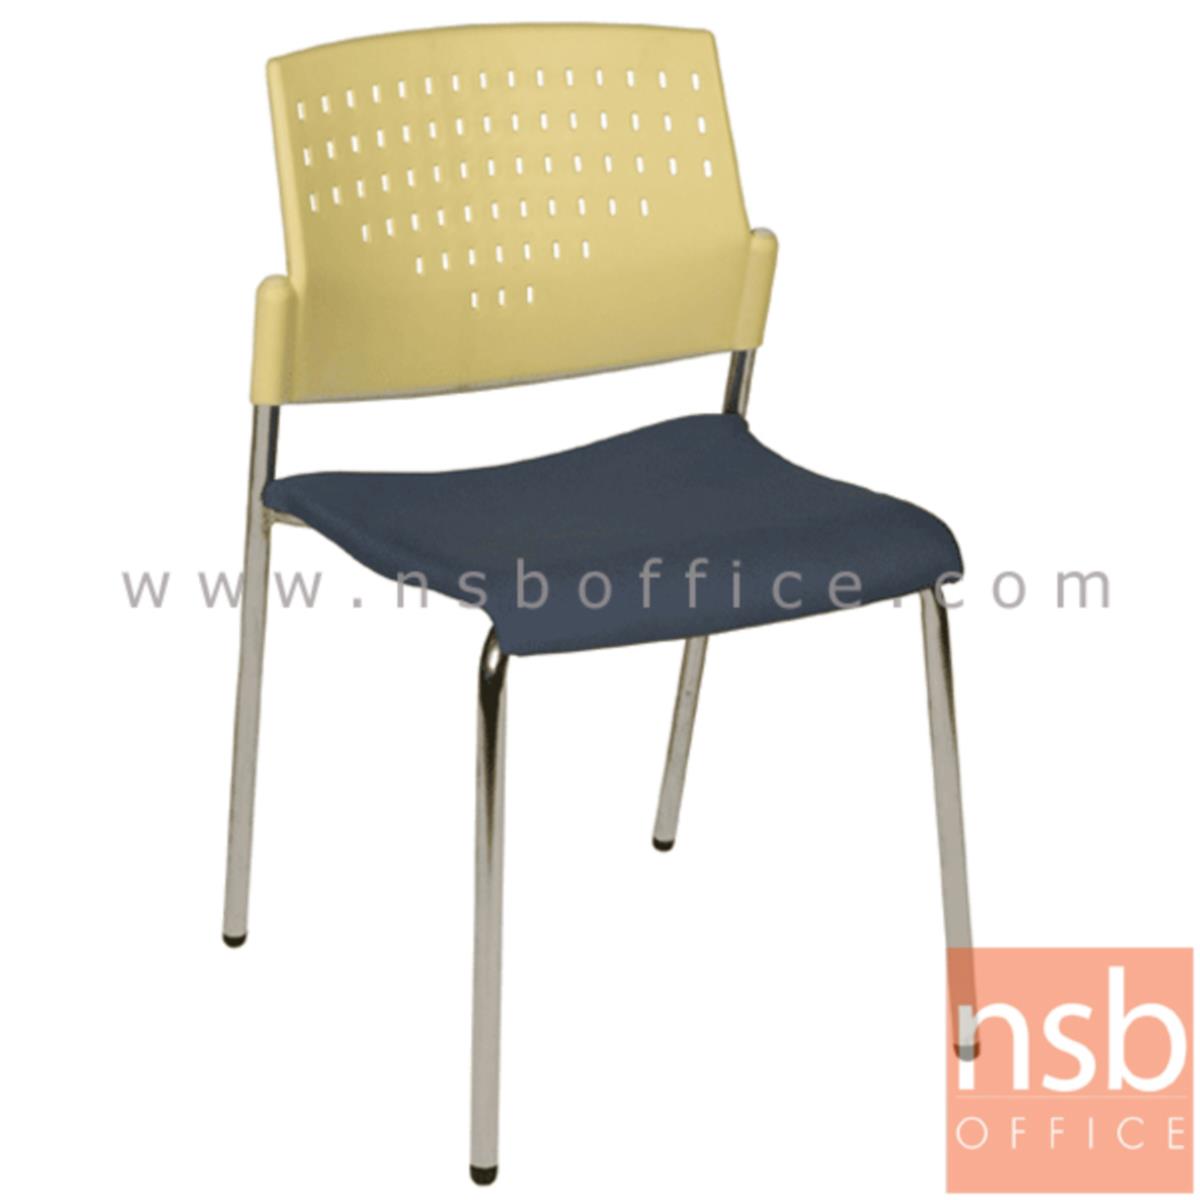 B05A039:เก้าอี้อเนกประสงค์เฟรมโพลี่ รุ่น A1-216  ขาเหล็กชุบโครเมี่ยม